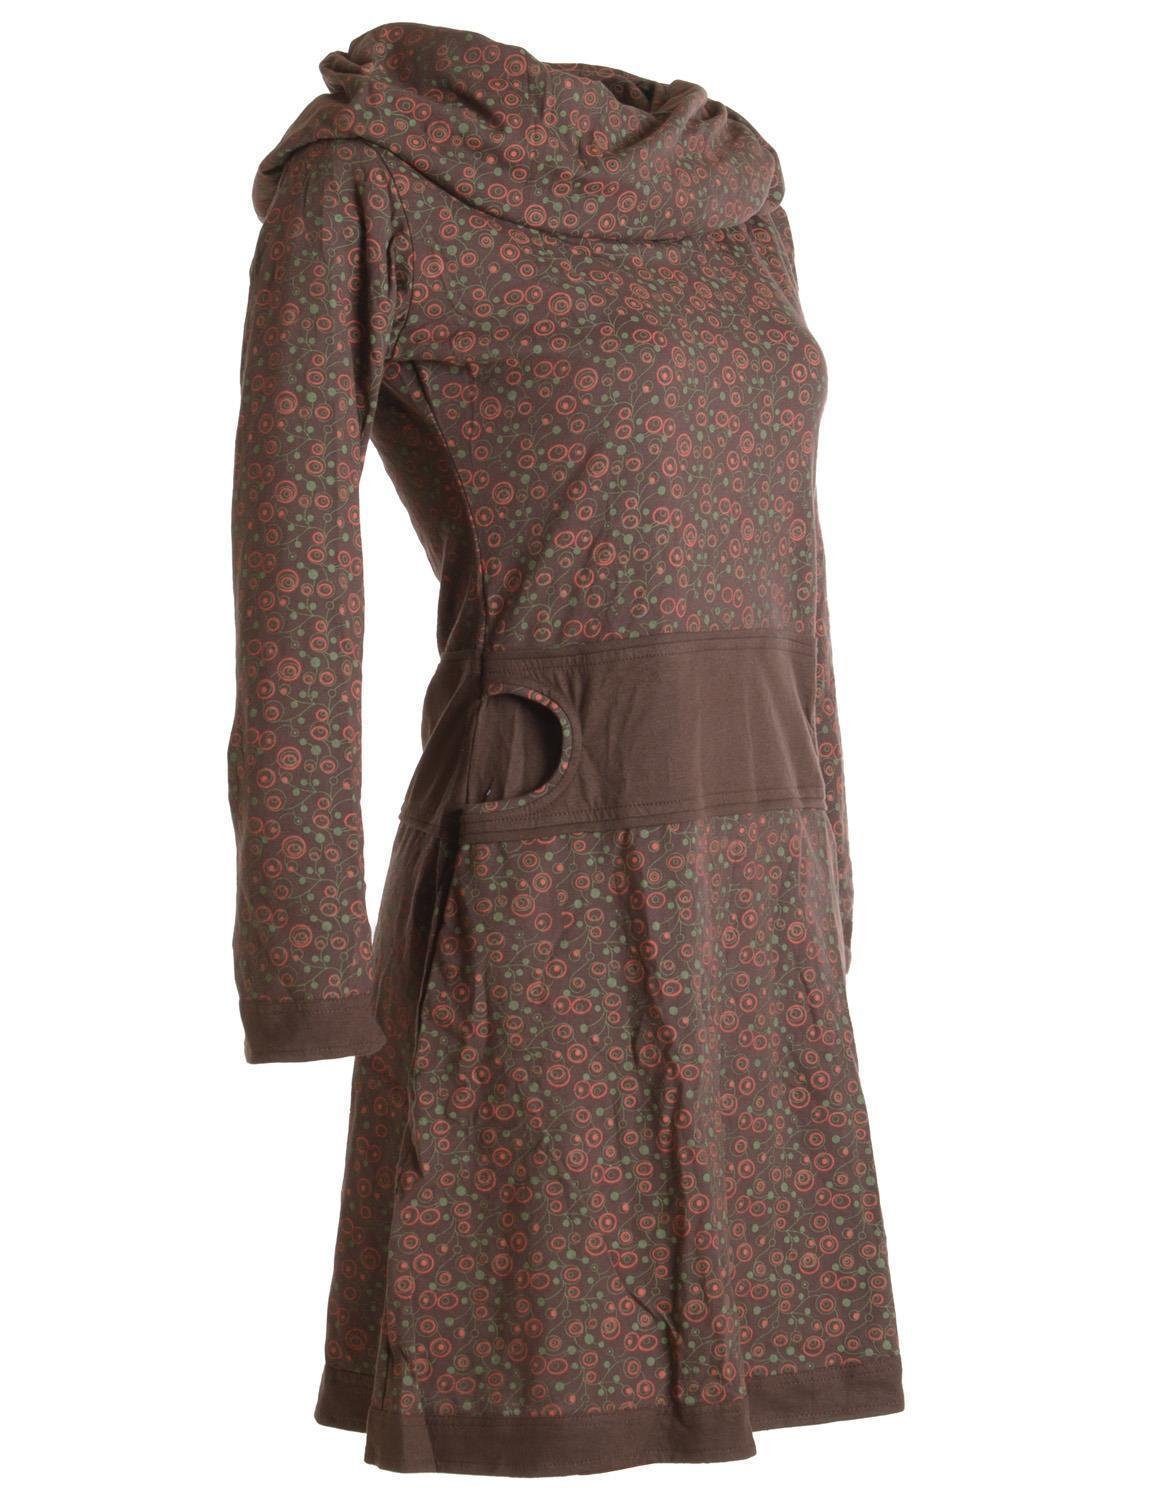 Vishes Jerseykleid Style Hippie Schalkragen dunkelbraun Boho, aus Bedrucktes mit Ethno, Baumwolle Kleid Goa